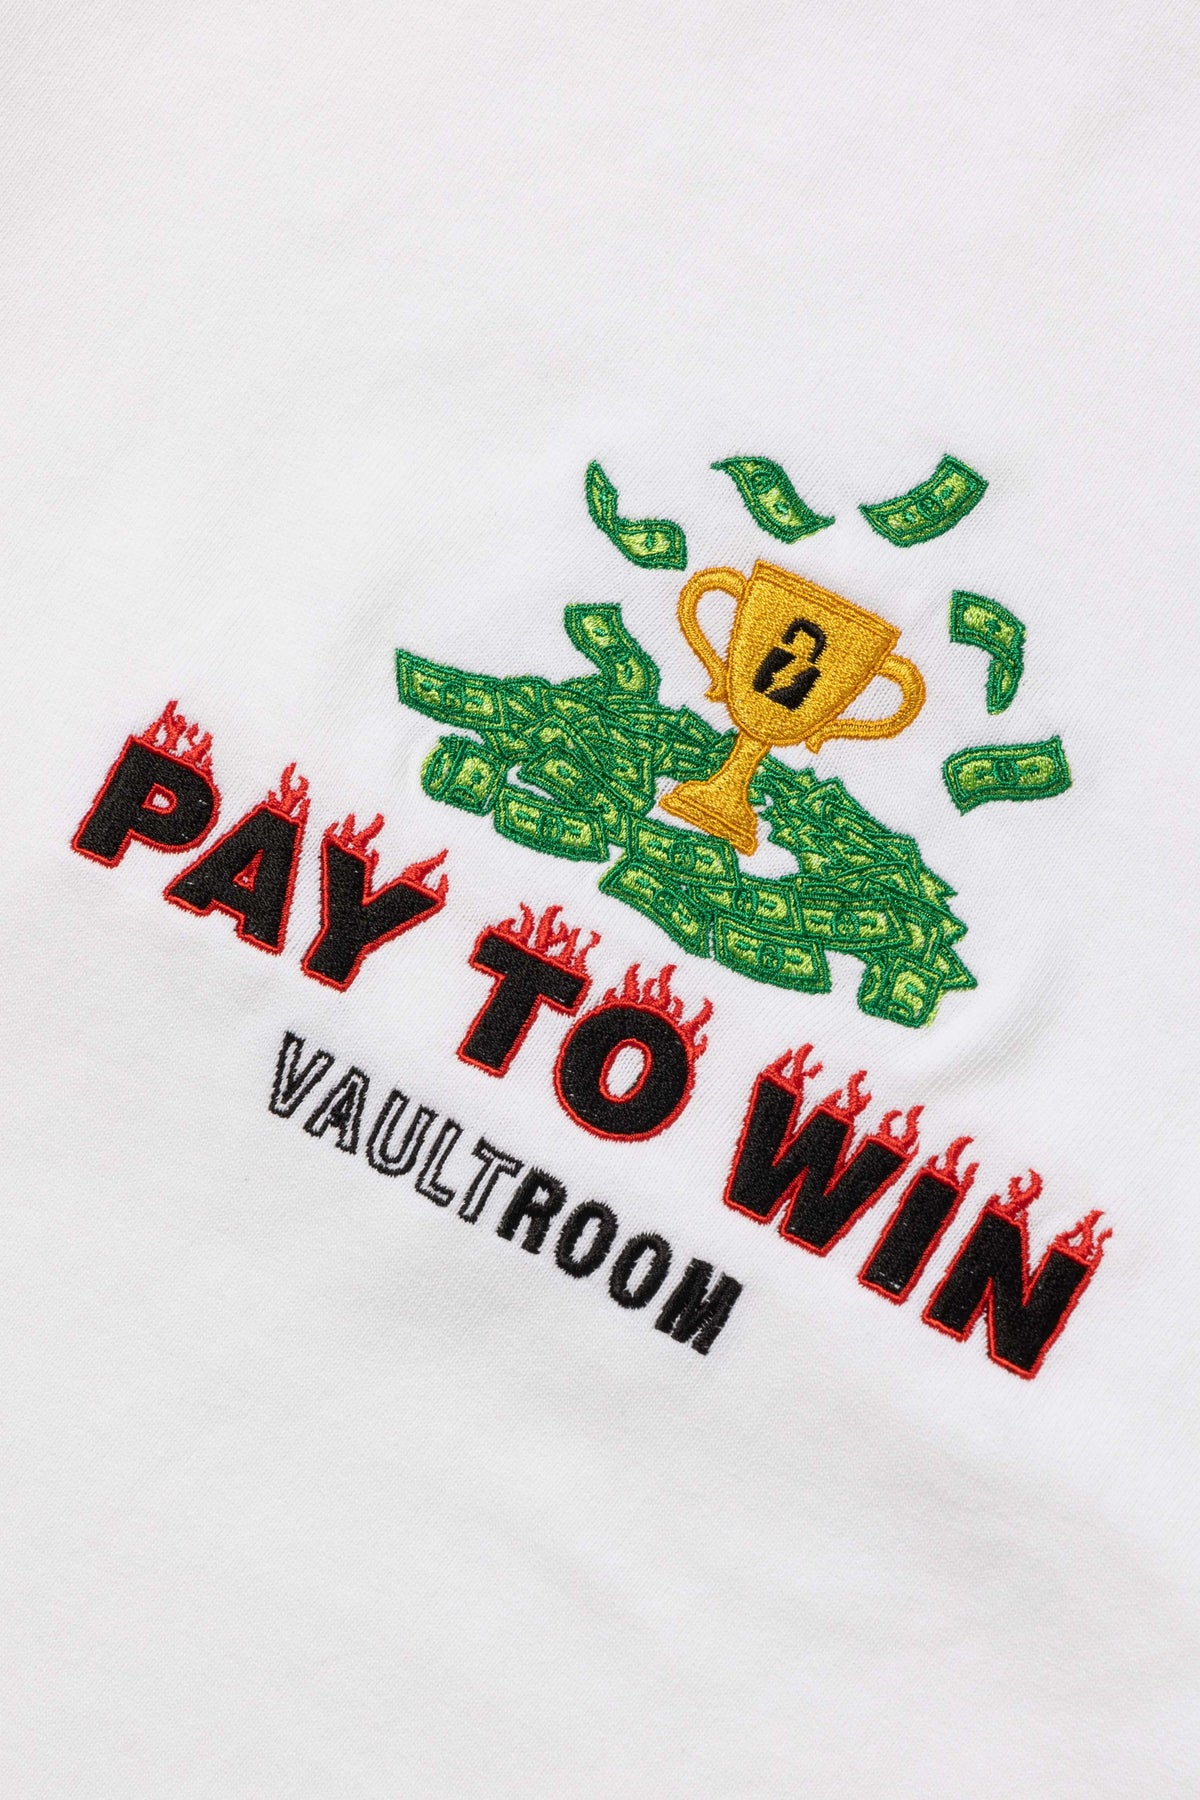 ボルトルーム vaultroom pay to win Tシャツ